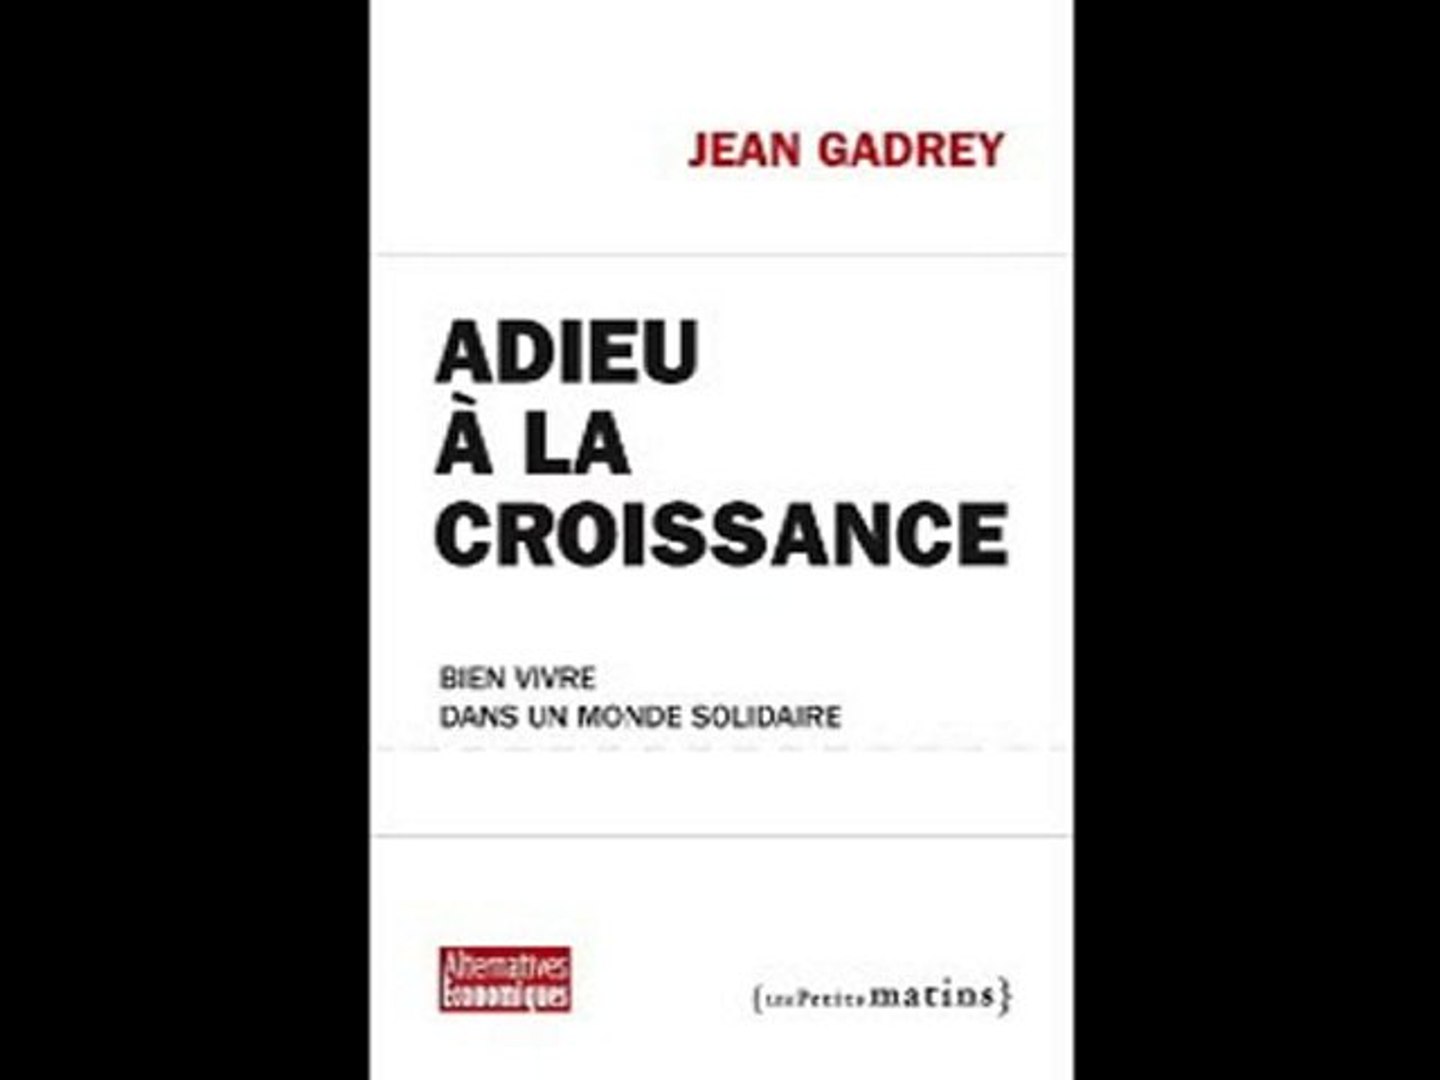 Jean Gadrey présente "Adieu à la croissance" - Vidéo Dailymotion